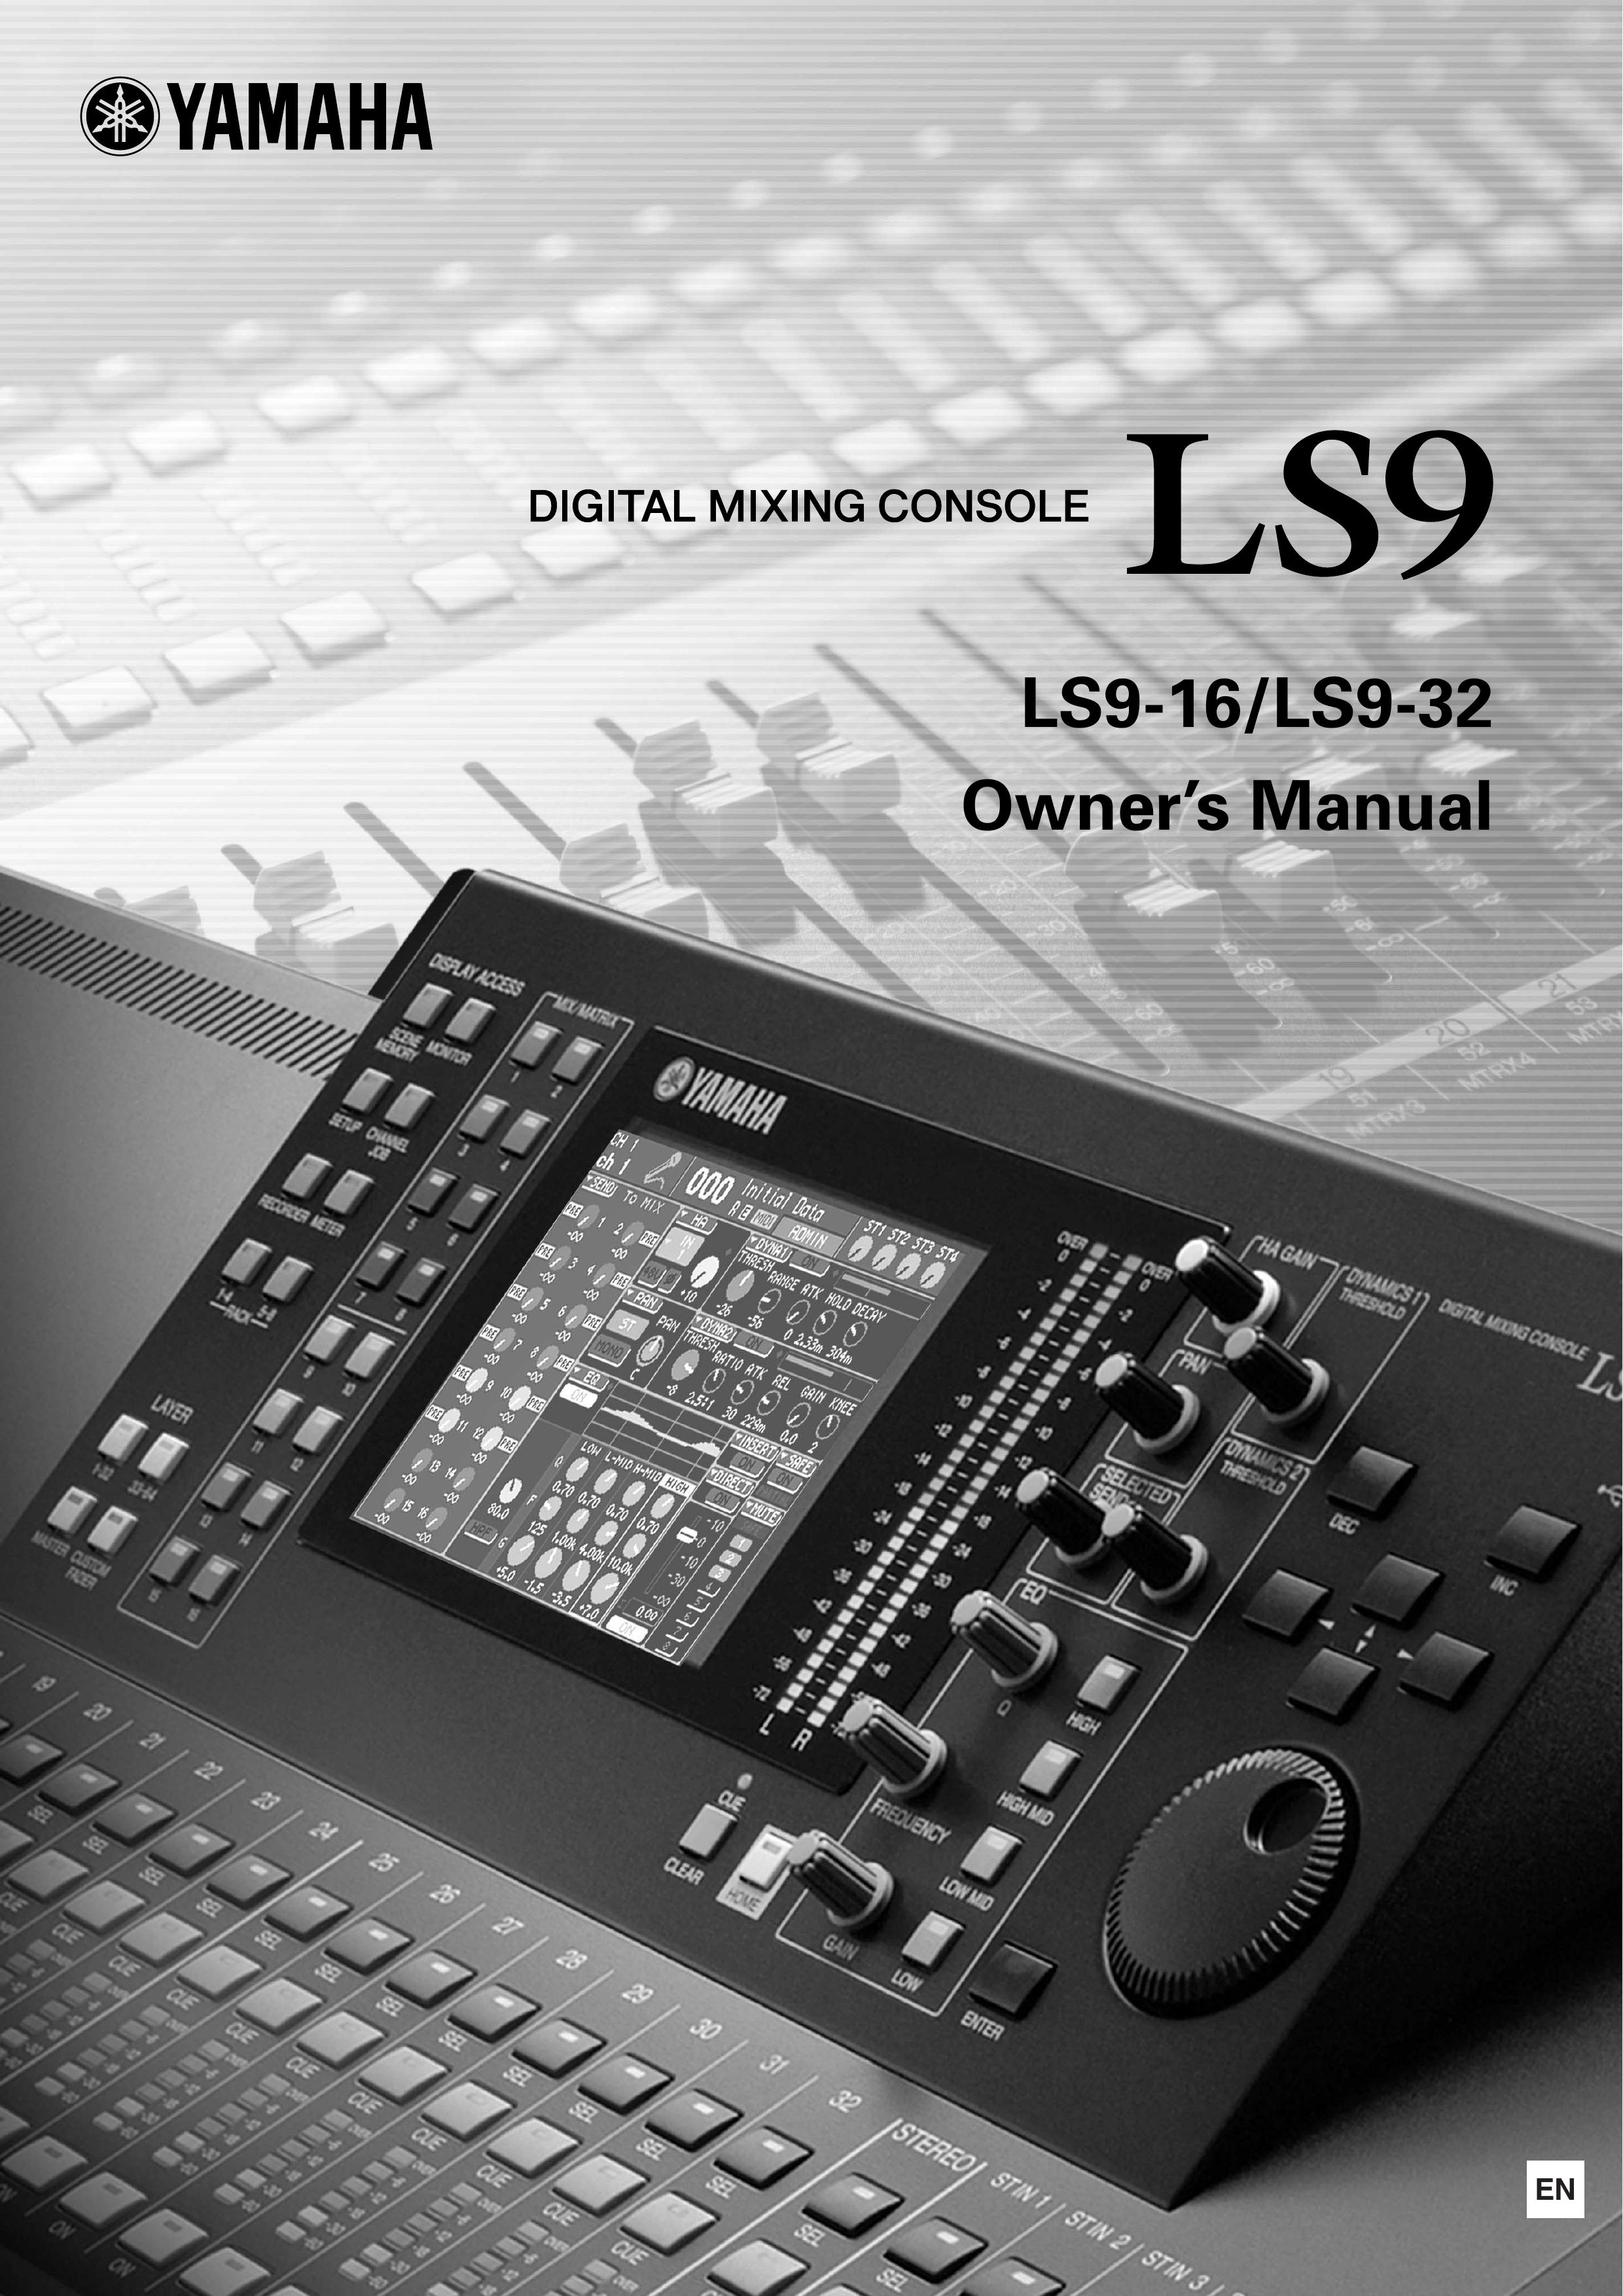 Yamaha 007POTO-G0 Music Mixer User Manual